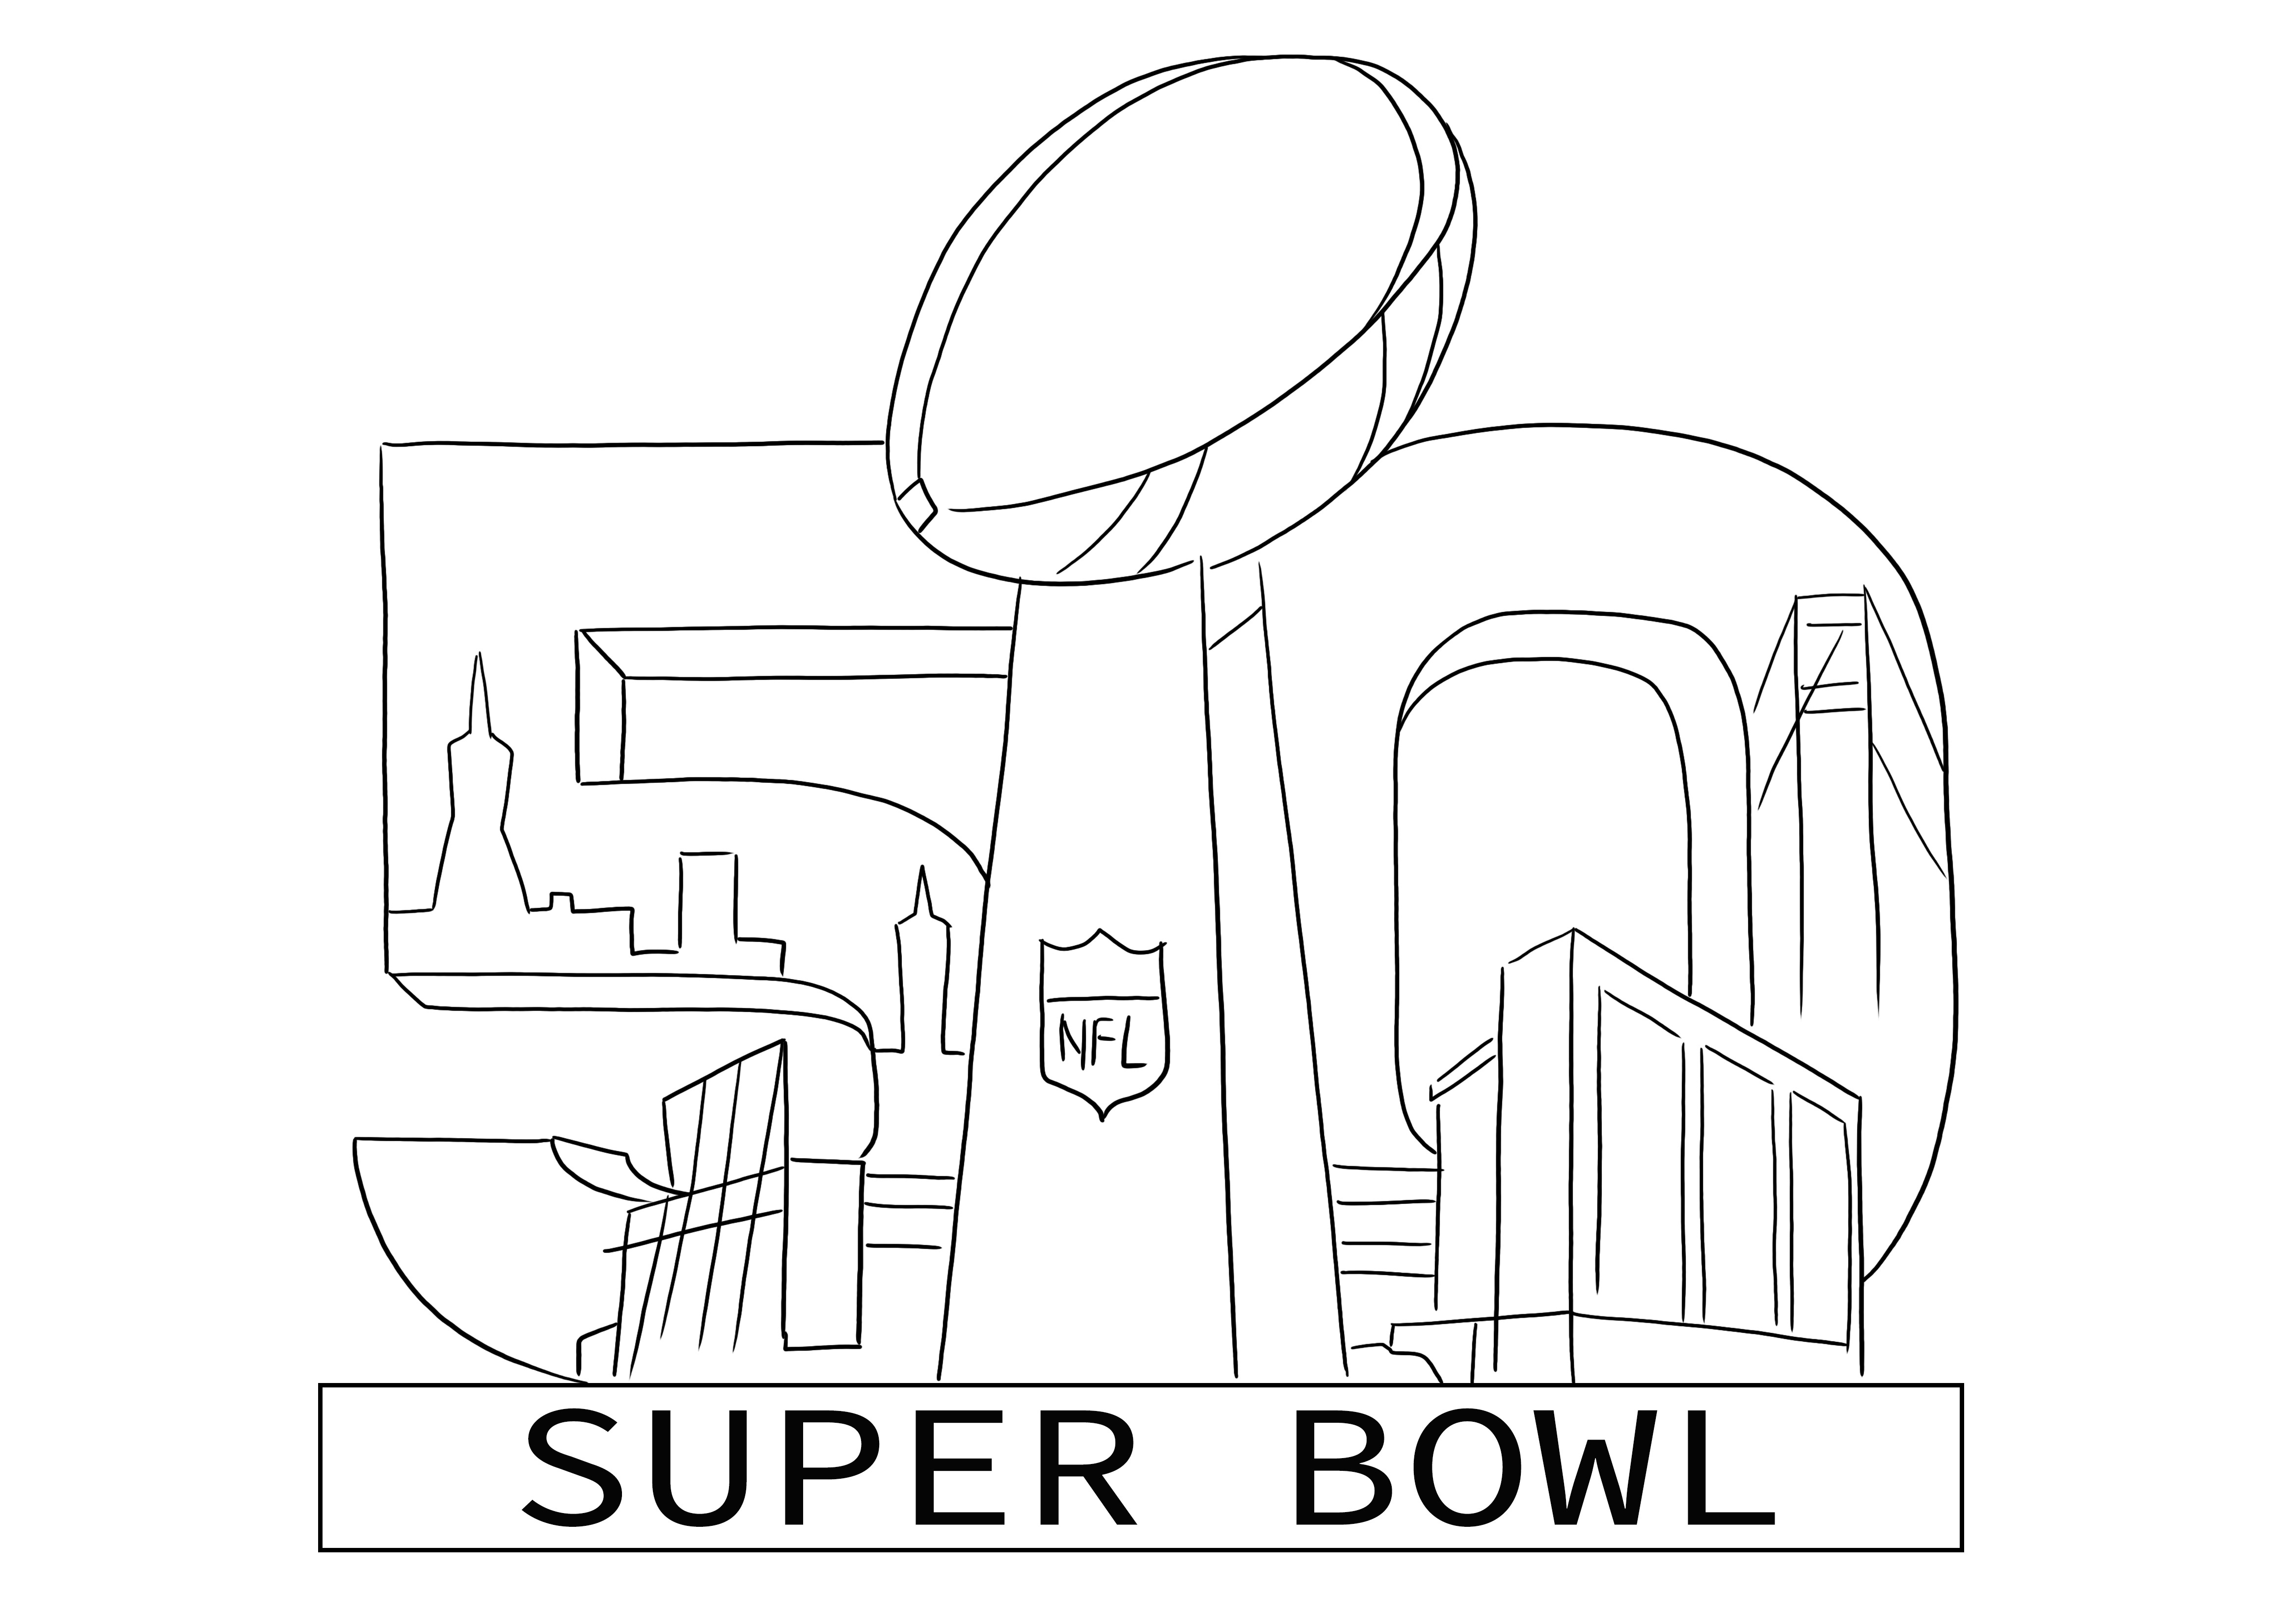 Super Bowl 2016 boyama logosu çocuklar için ücretsiz olarak yazdırılabilir veya indirilebilir